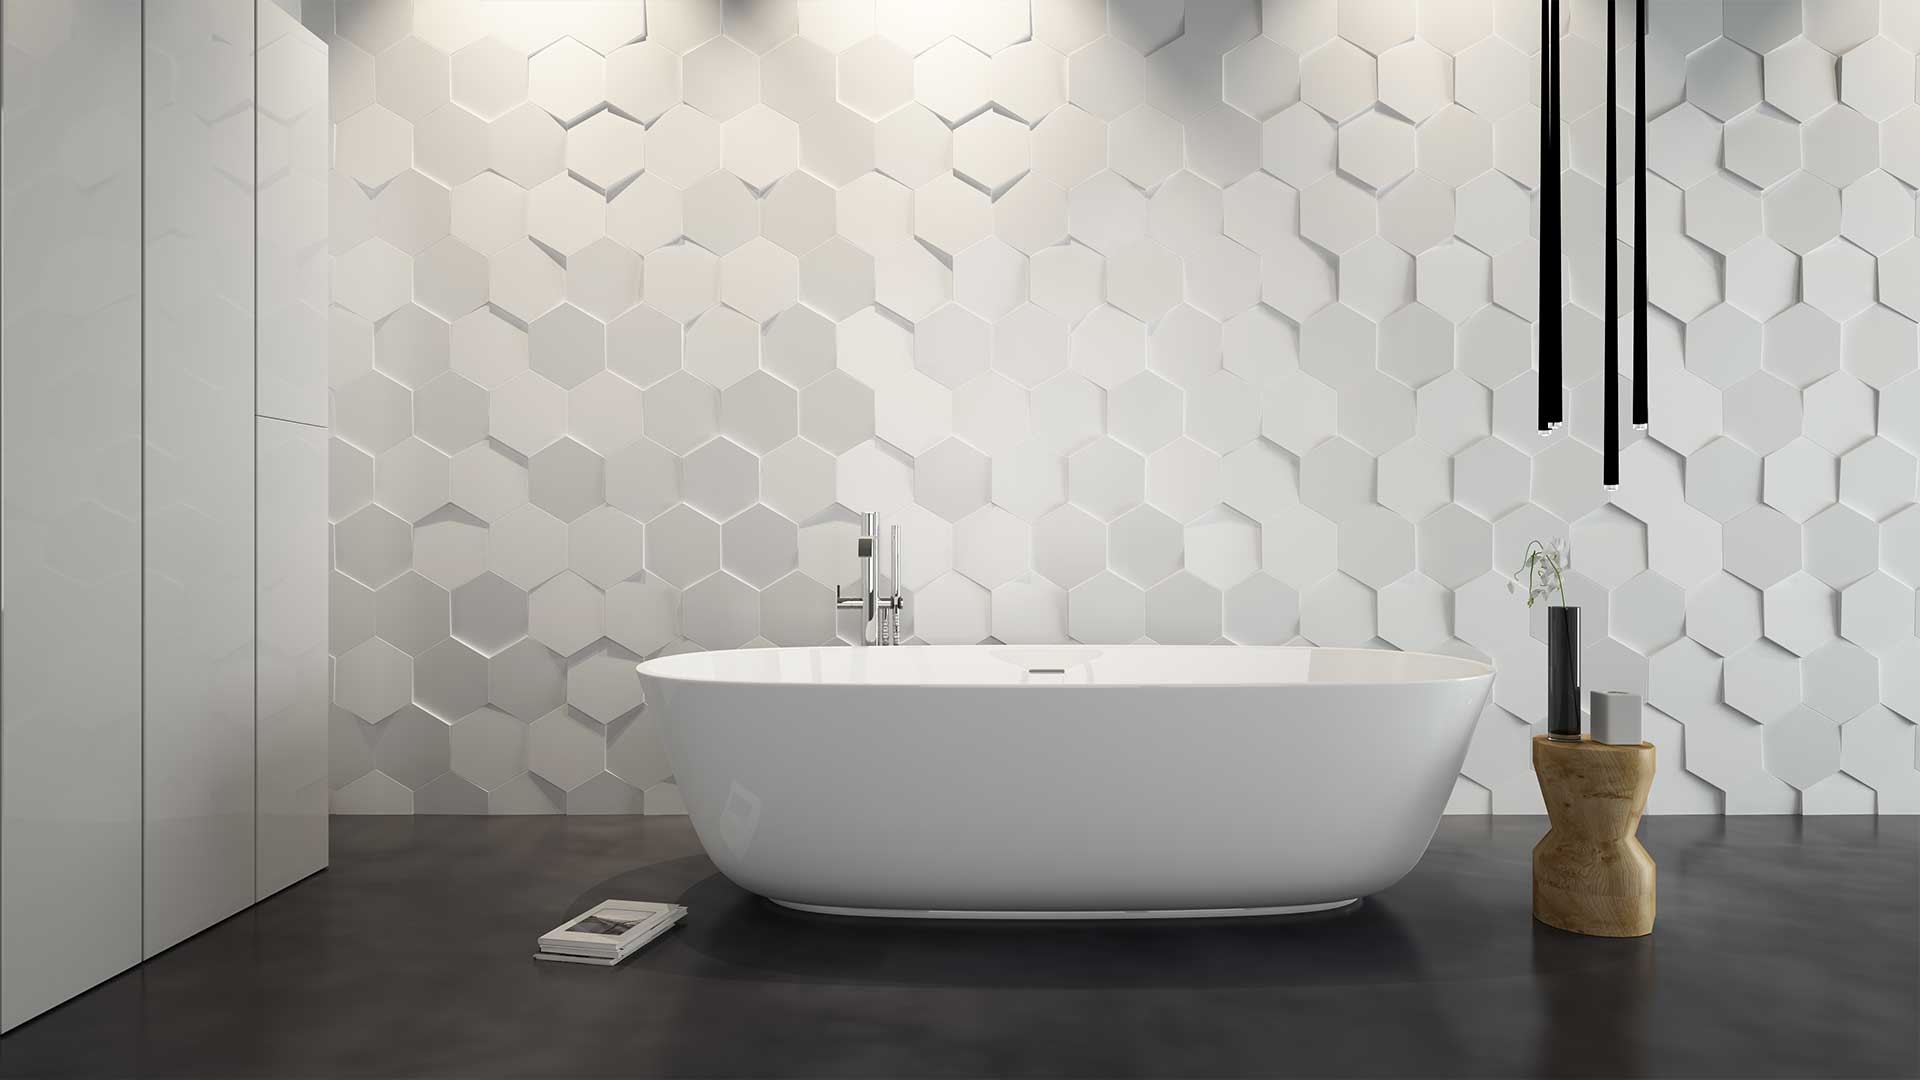 Tile 3d bathroom design free